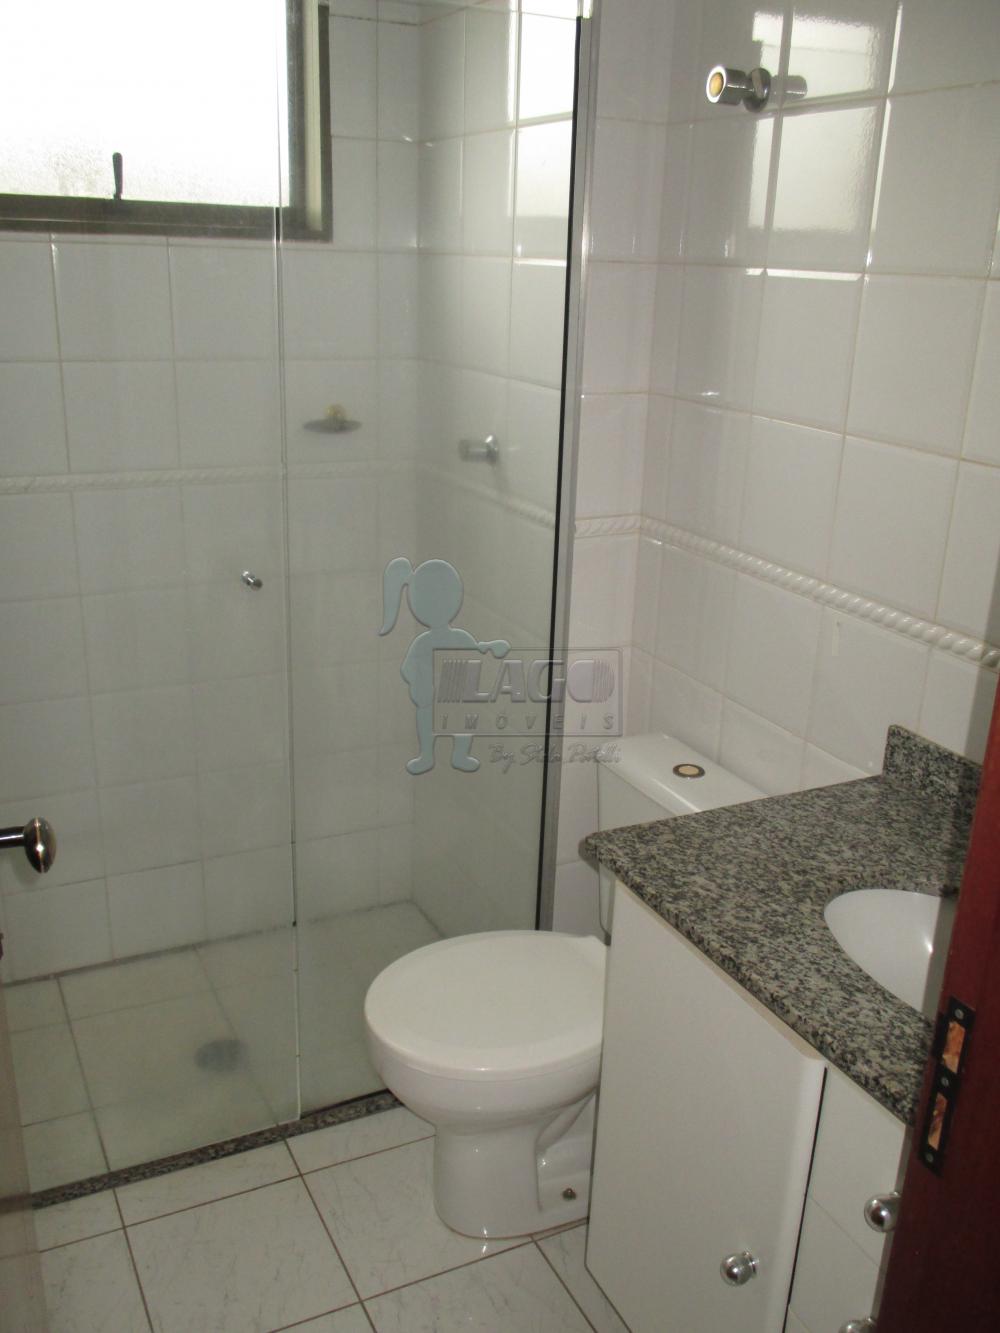 Alugar Apartamentos / Padrão em Ribeirão Preto R$ 680,00 - Foto 6